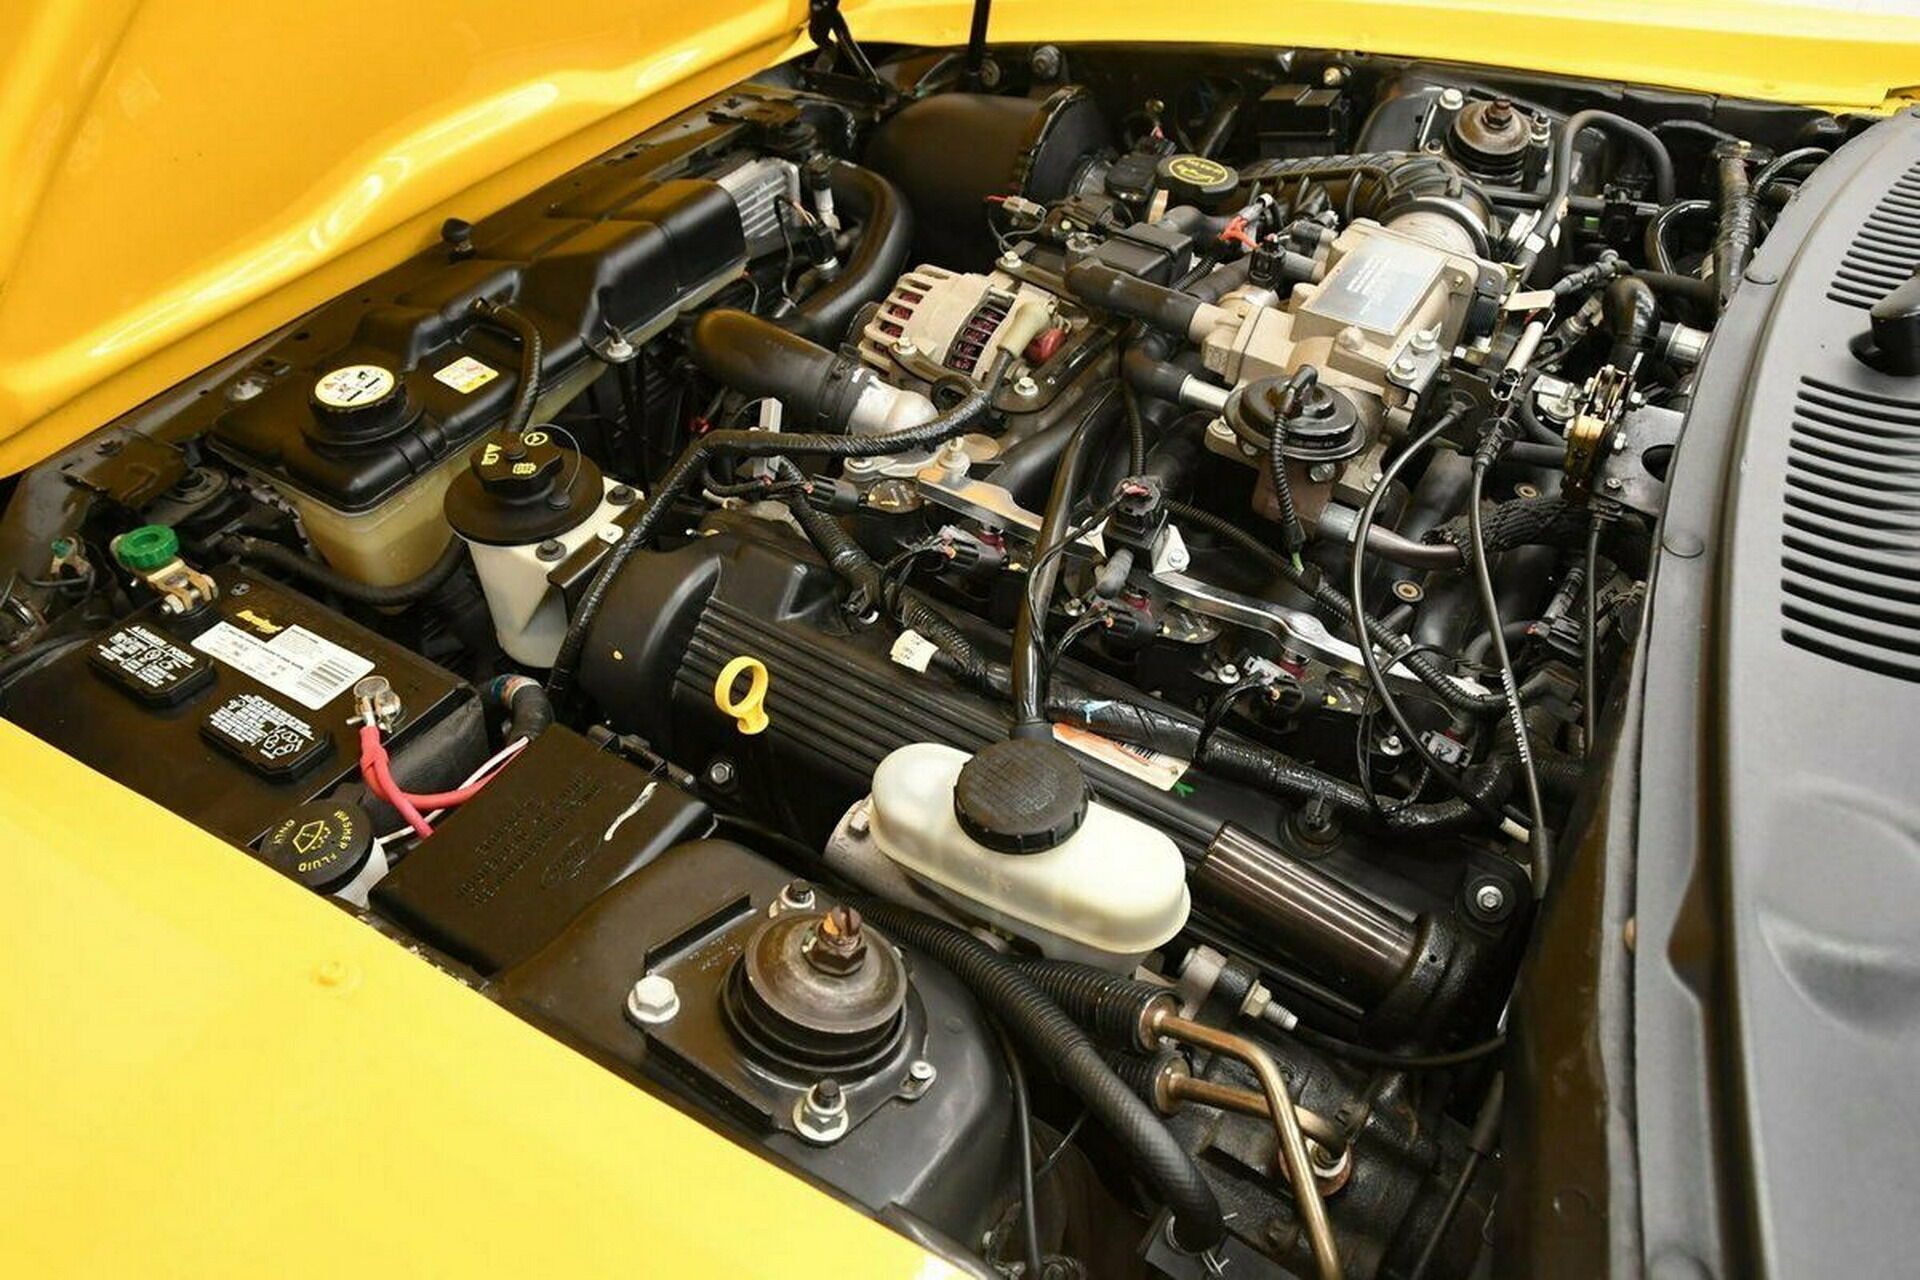 Под капотом – 4,6-литровый мотор V8 мощностью 264 л.с., который работает в паре с 4-ступенчатым "автоматом"